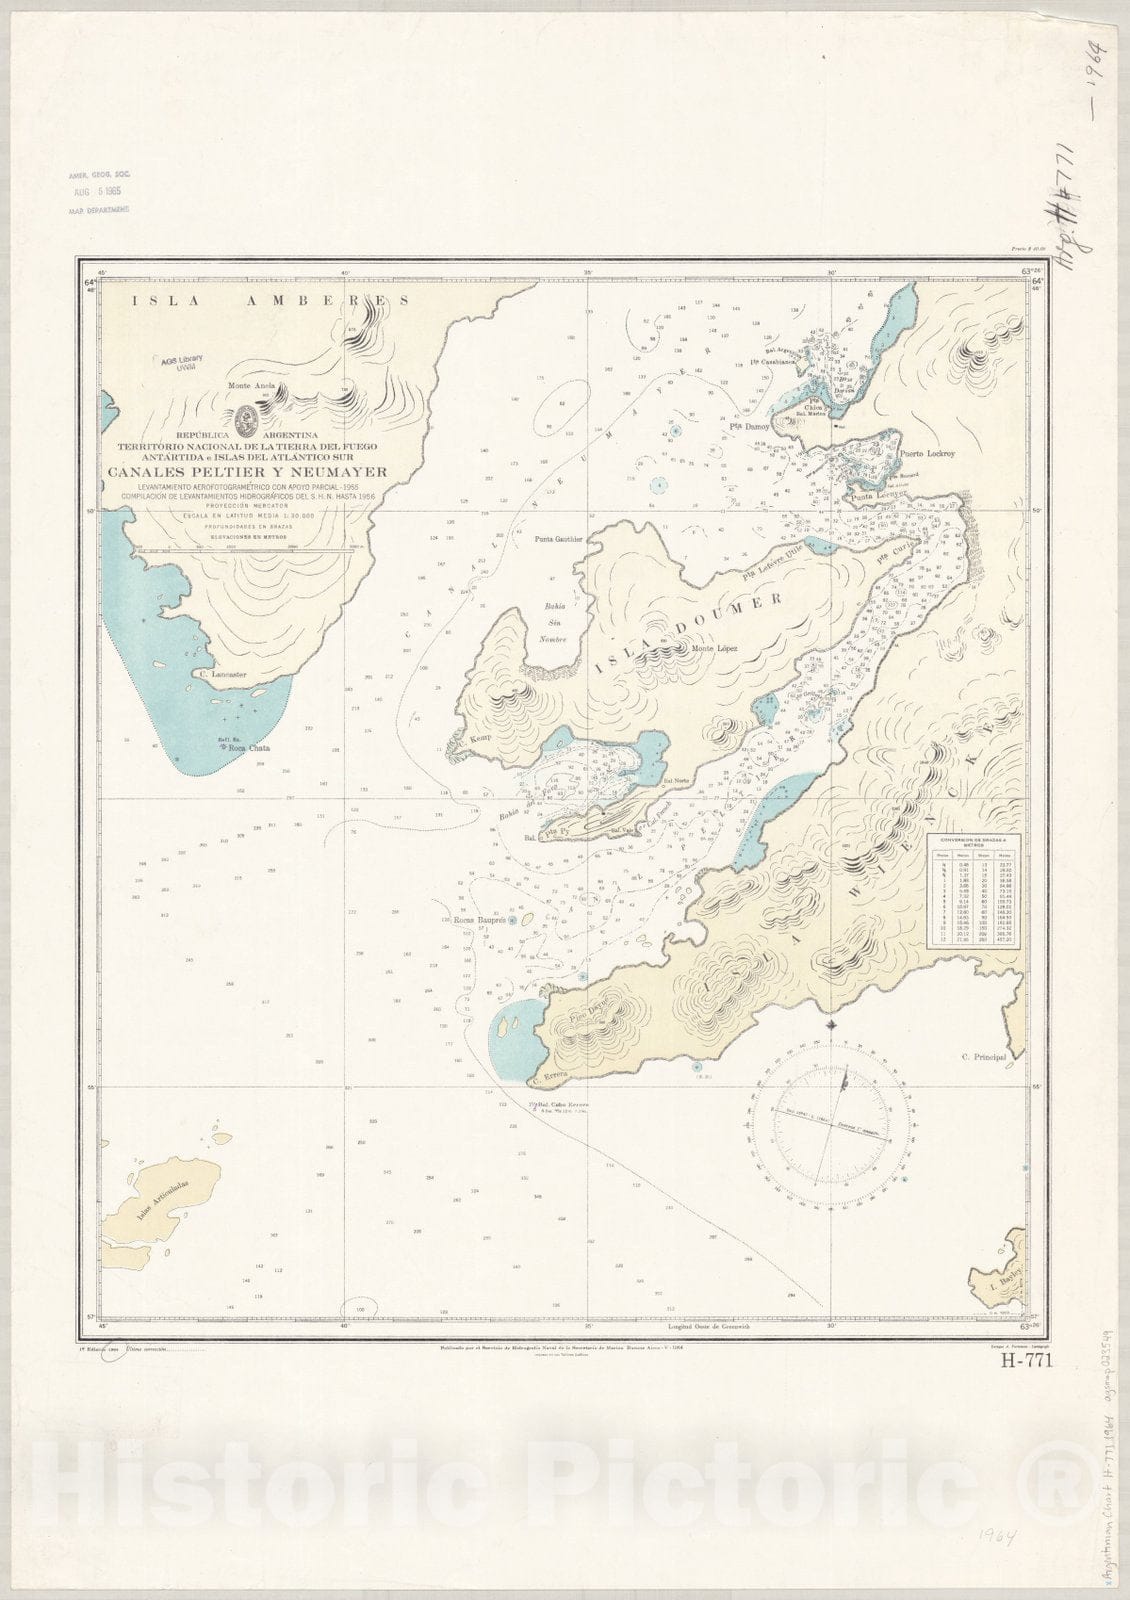 Map : Argentina and Antarctica 1964, Republica Argentina, Territorio Nacional de la Tierra del Fuego, Antartida e Islas del Atlantico Sur, Canales Peltier y Neumayer